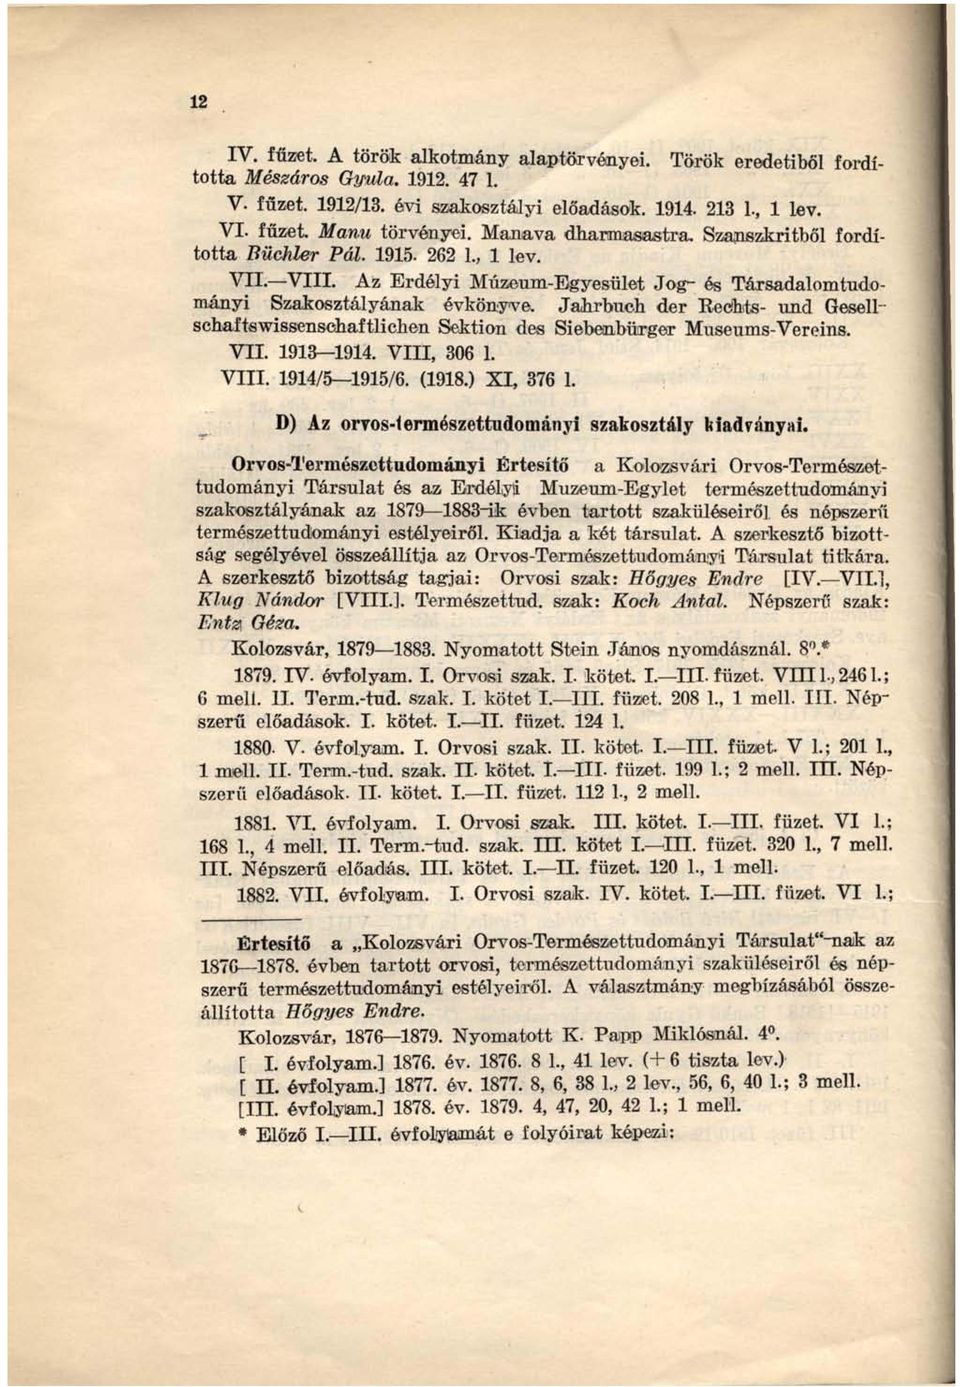 Janrbueh der Keöhts- und Gesell" schaftswissenscnaftlichen Sektion des Siebenbürger Museums-Vereins. VII. 1913 1914. VIII, 306 1. VIII. 1914/5 1915/6. (1918.) XI, 376 1.